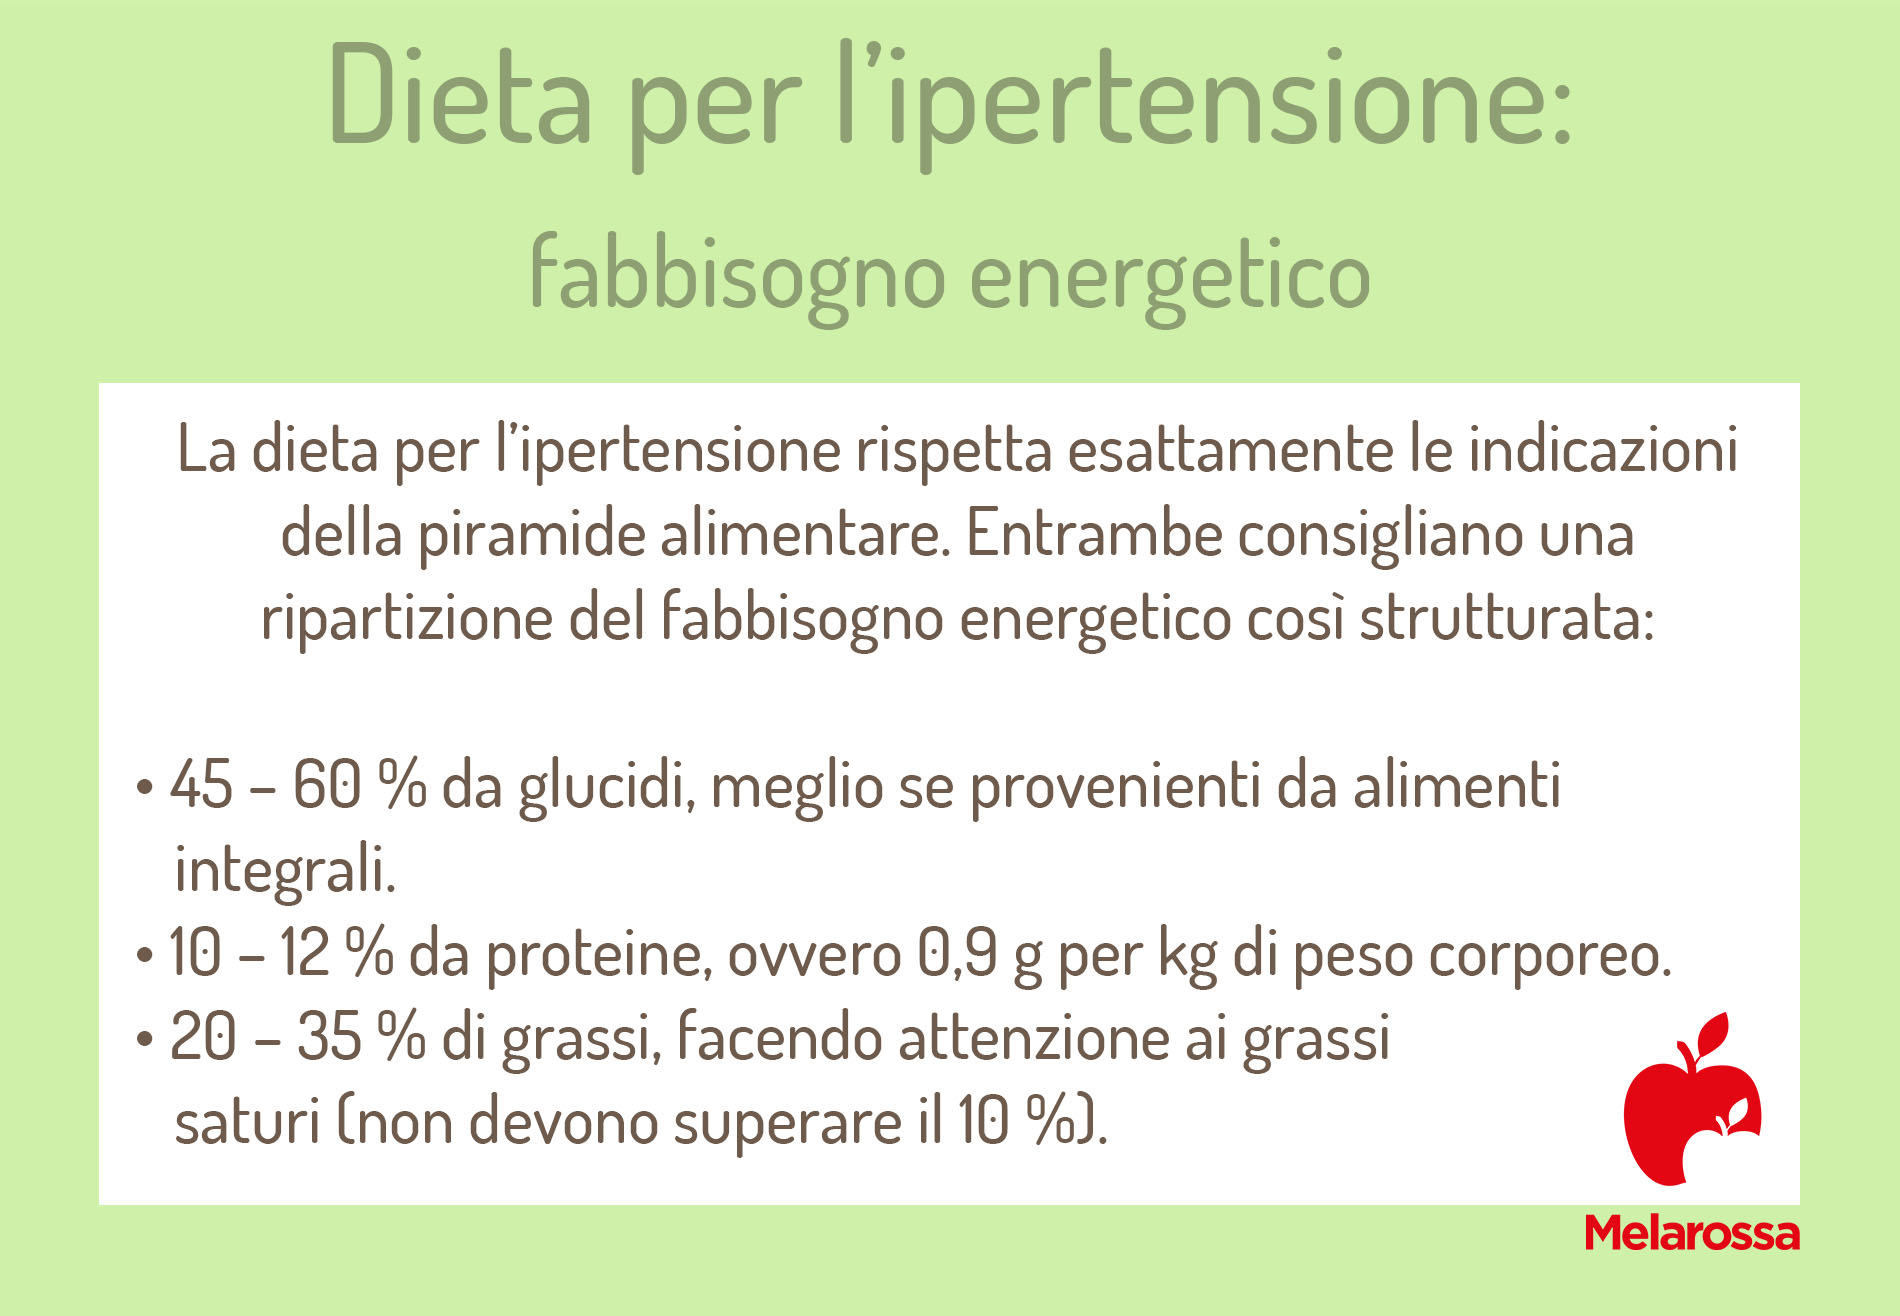 dieta per ipertensione: fabbisogno energetico